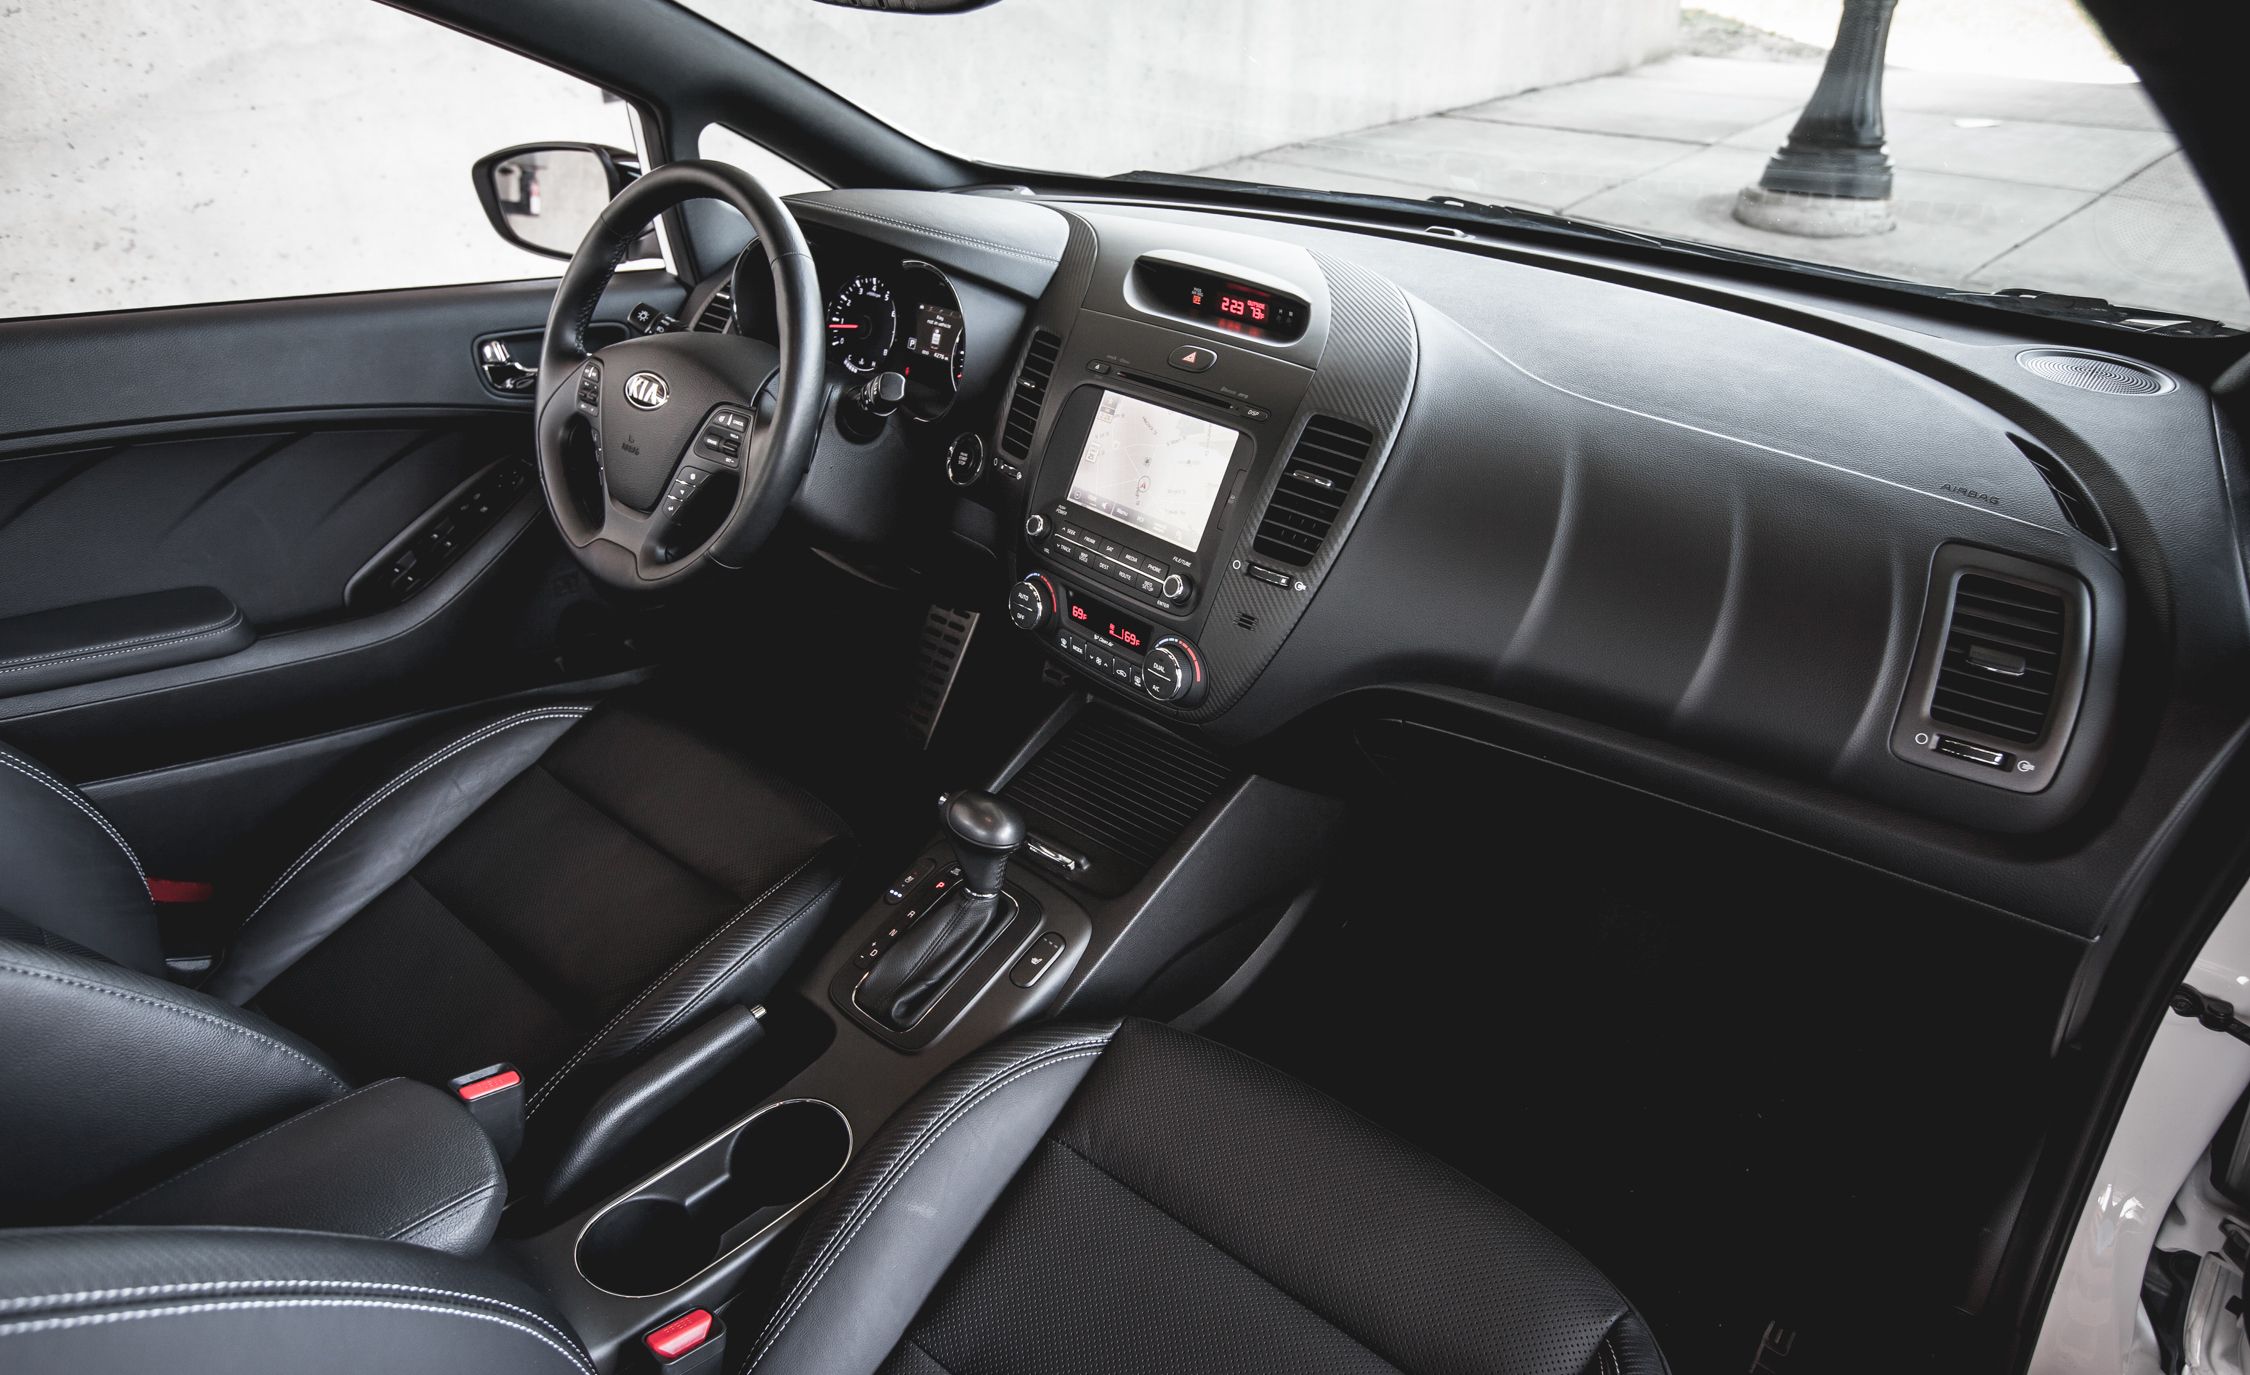 2014 Kia Forte5 Sx Turbo Interior (View 9 of 26)